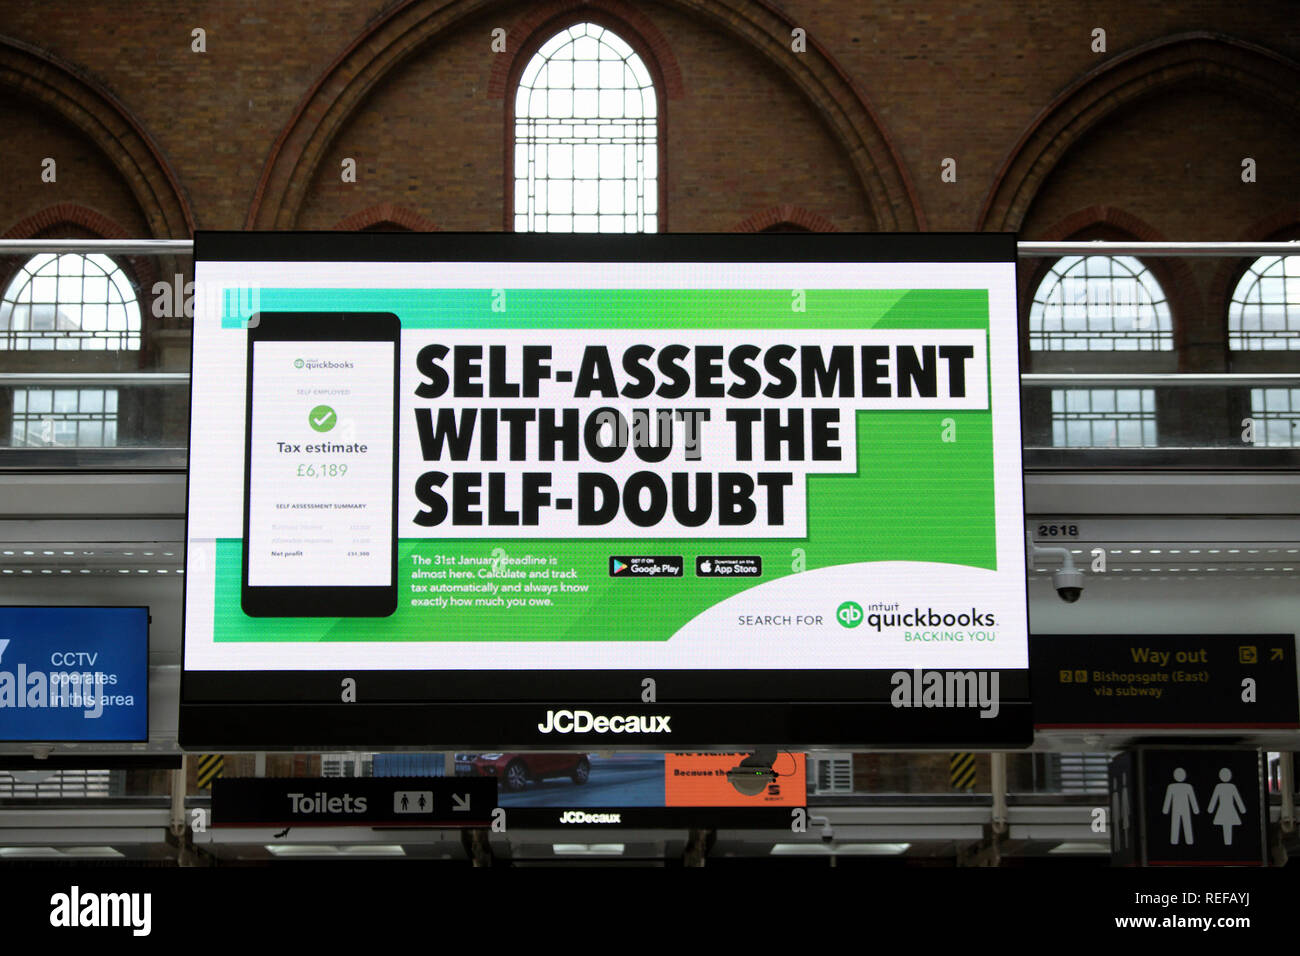 Auto-évaluation Quickbooks Sans Self-Doubt" Babillard électronique poster annonce Inscrivez-vous à la gare de Liverpool Street à Londres Angleterre Royaume-uni KATHY DEWITT Banque D'Images